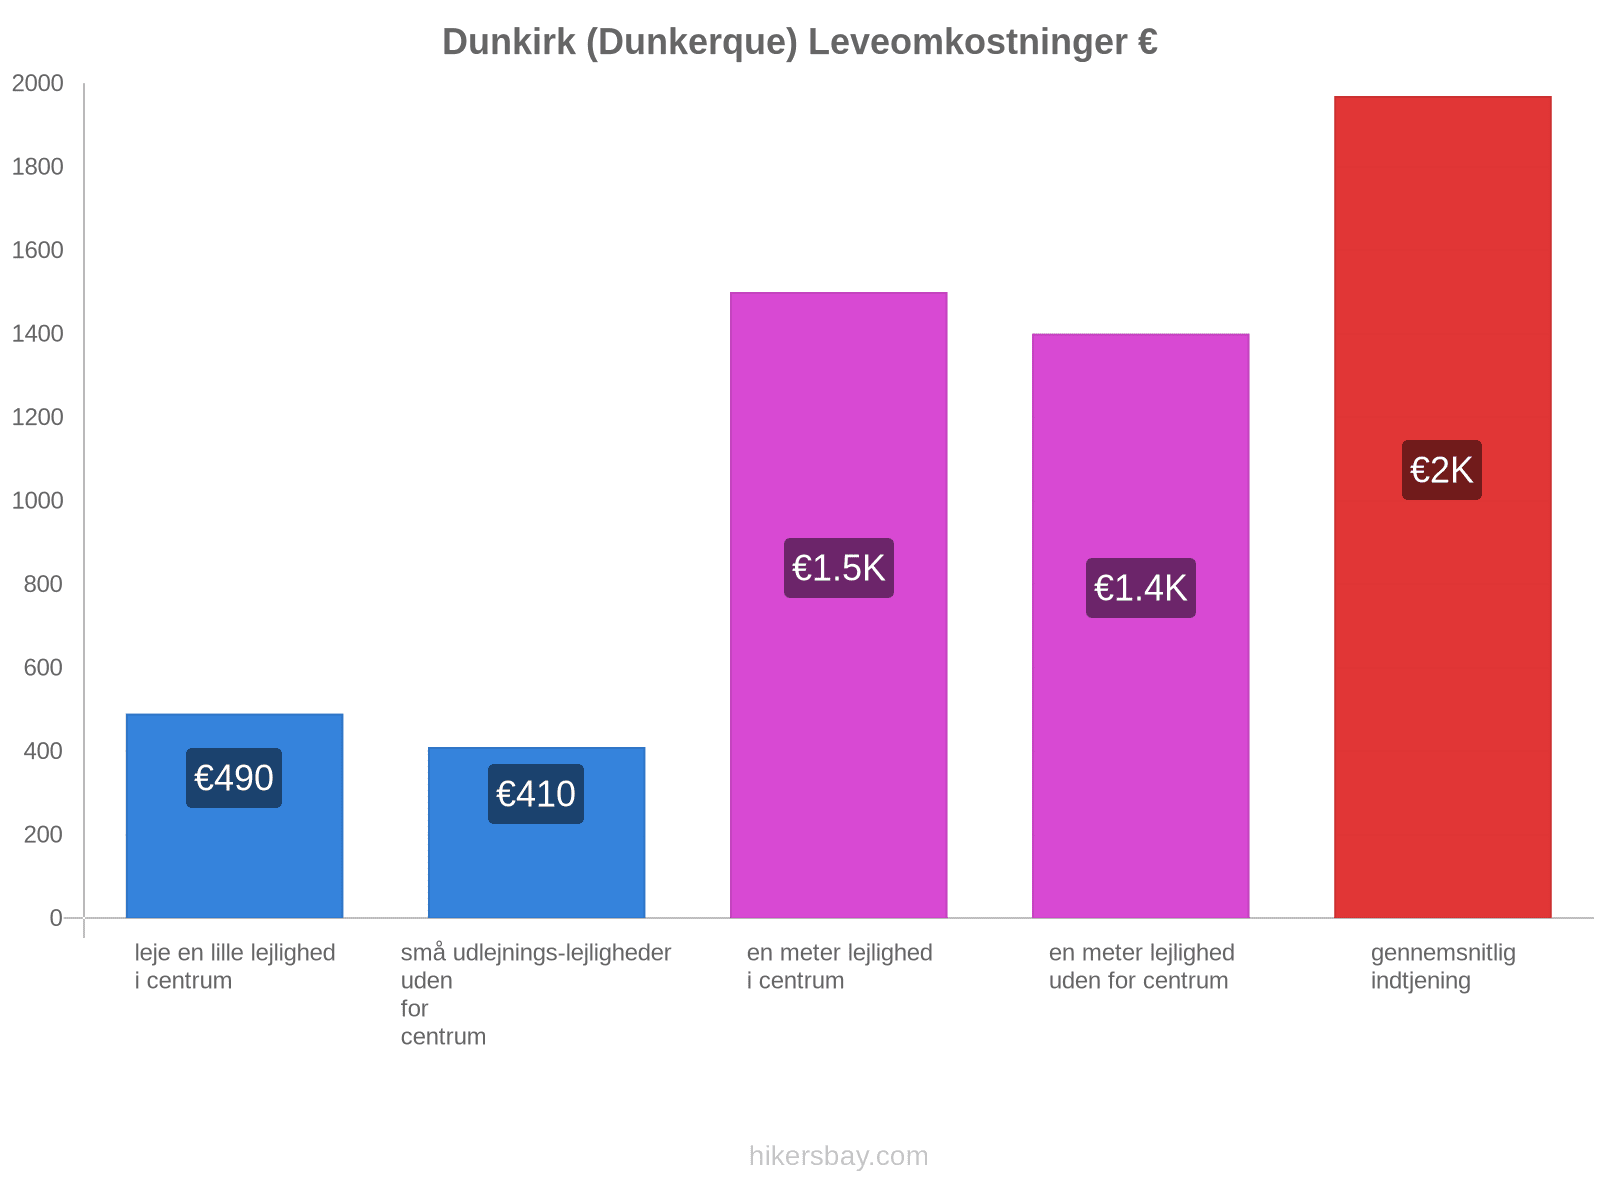 Dunkirk (Dunkerque) leveomkostninger hikersbay.com